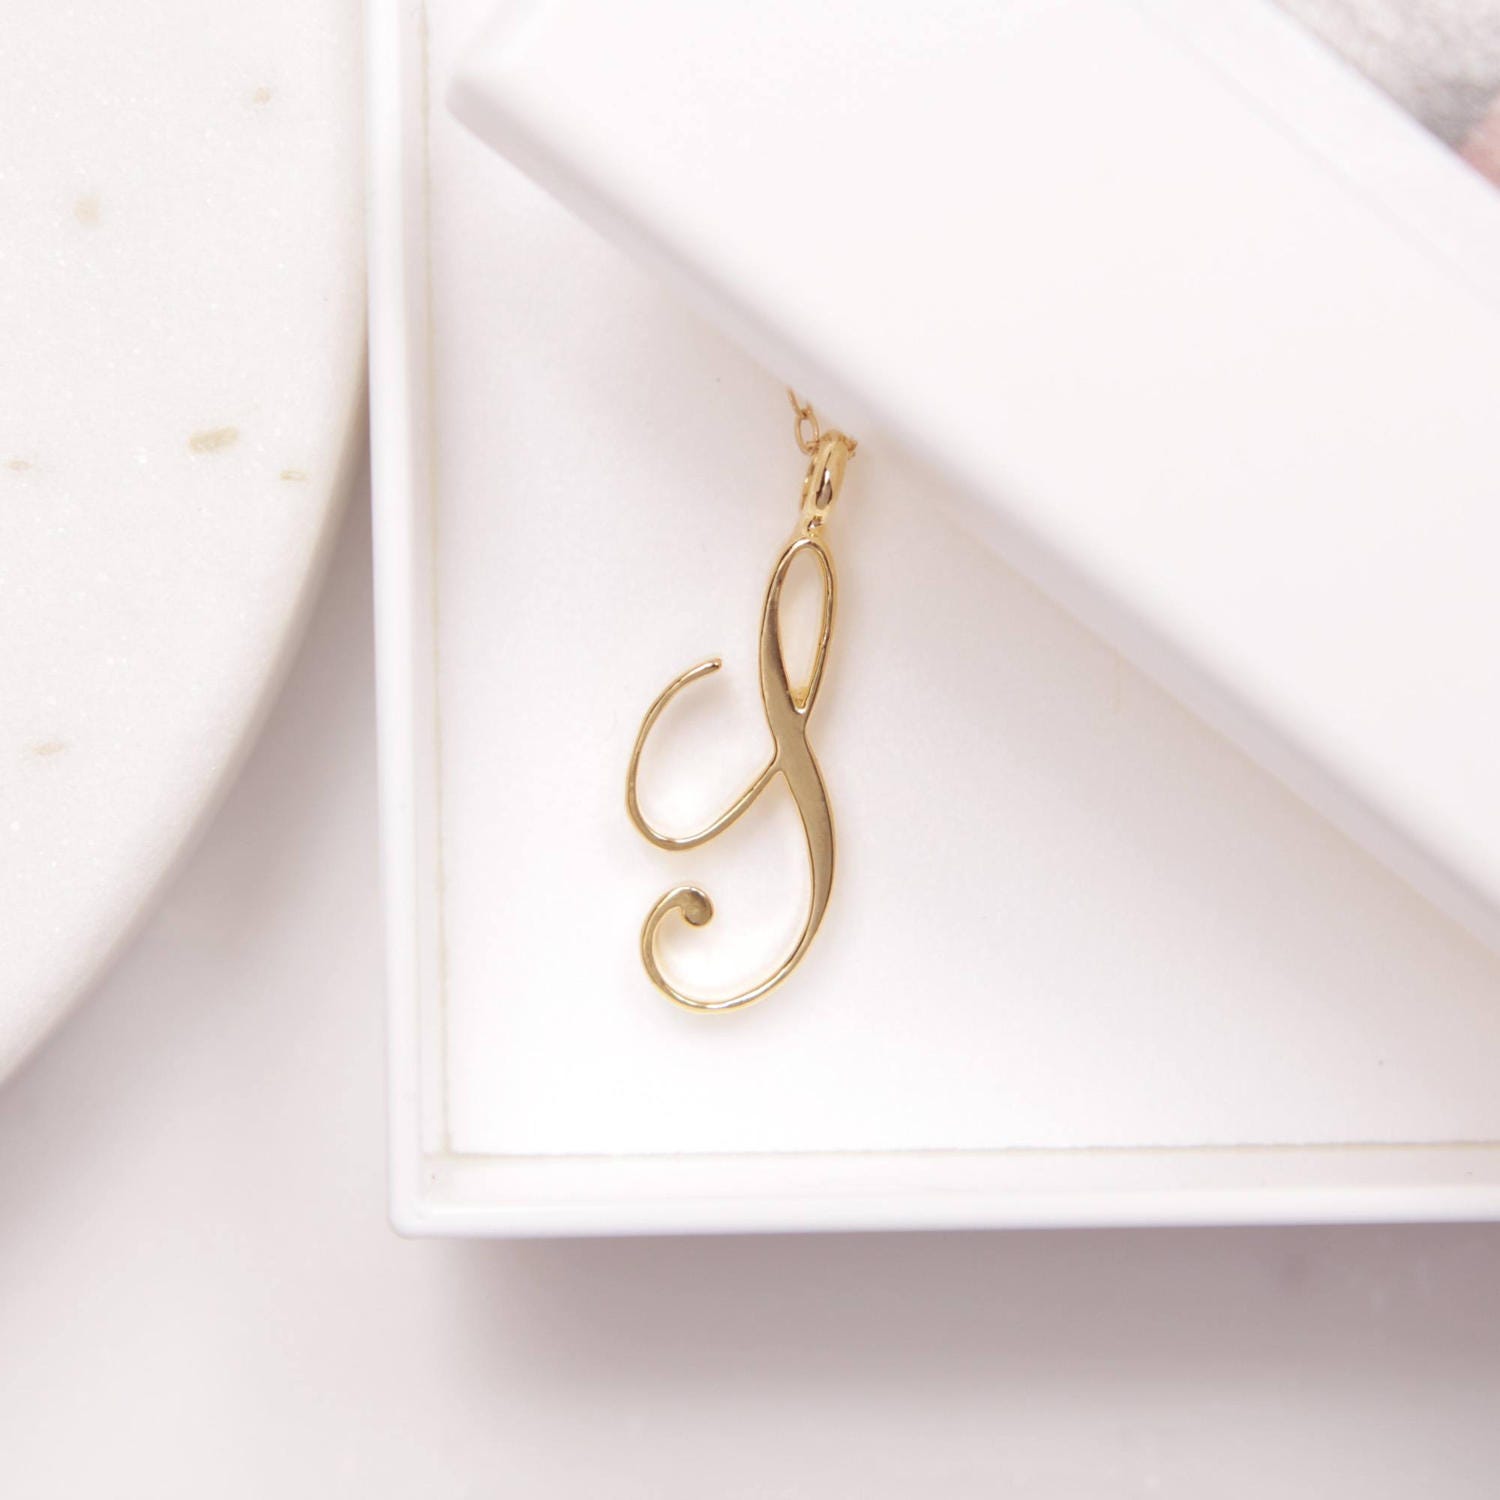 S Cursive Initial Gold Pendant Necklace Necklaces Soul & Little Rose   